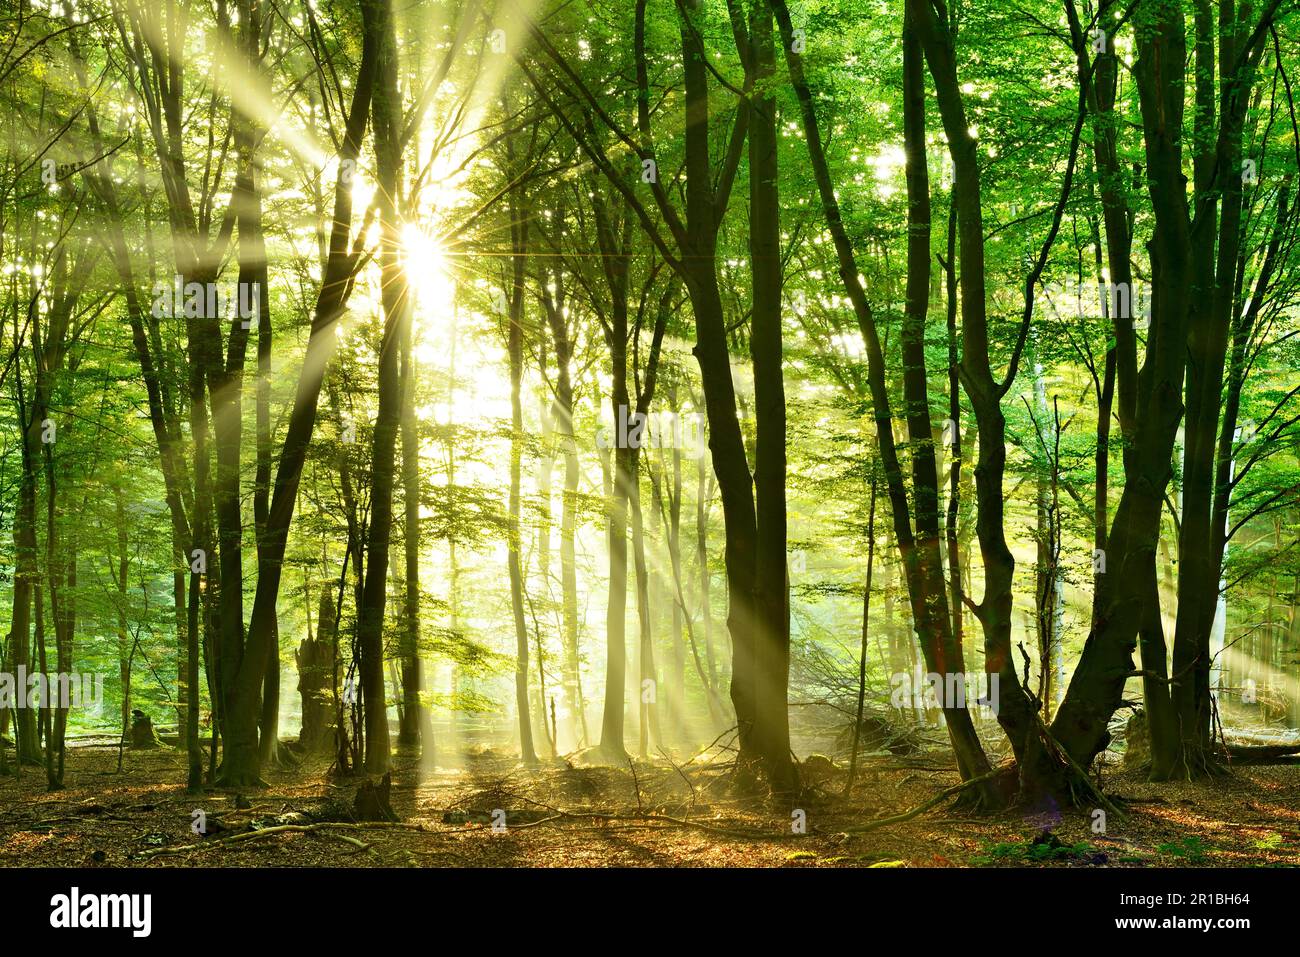 La foresta di faggi incontaminata, inondata di luce, con un sacco di legno morto al mattino presto, il sole splende attraverso la nebbia, Reinhardswald, Assia, Germania Foto Stock